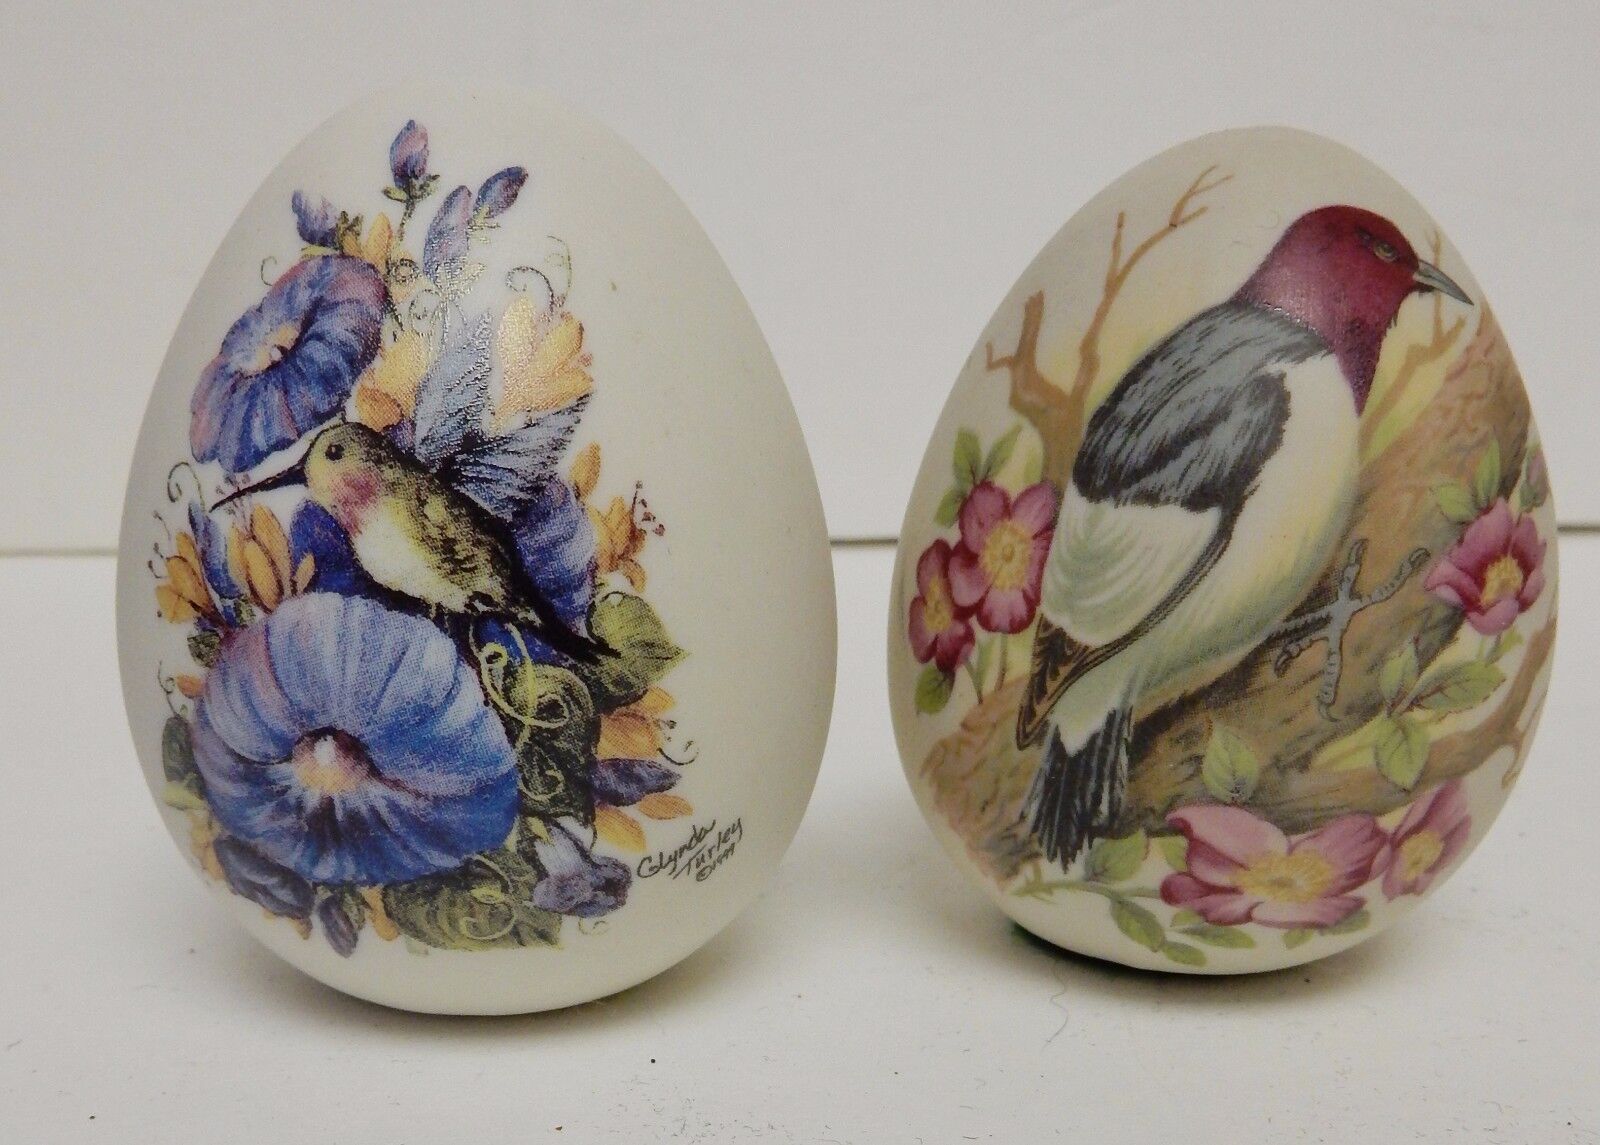 Glenda Turley Porcelain Bisque Egg Eggs Porcelain Set of 2 Birds Floral \'99